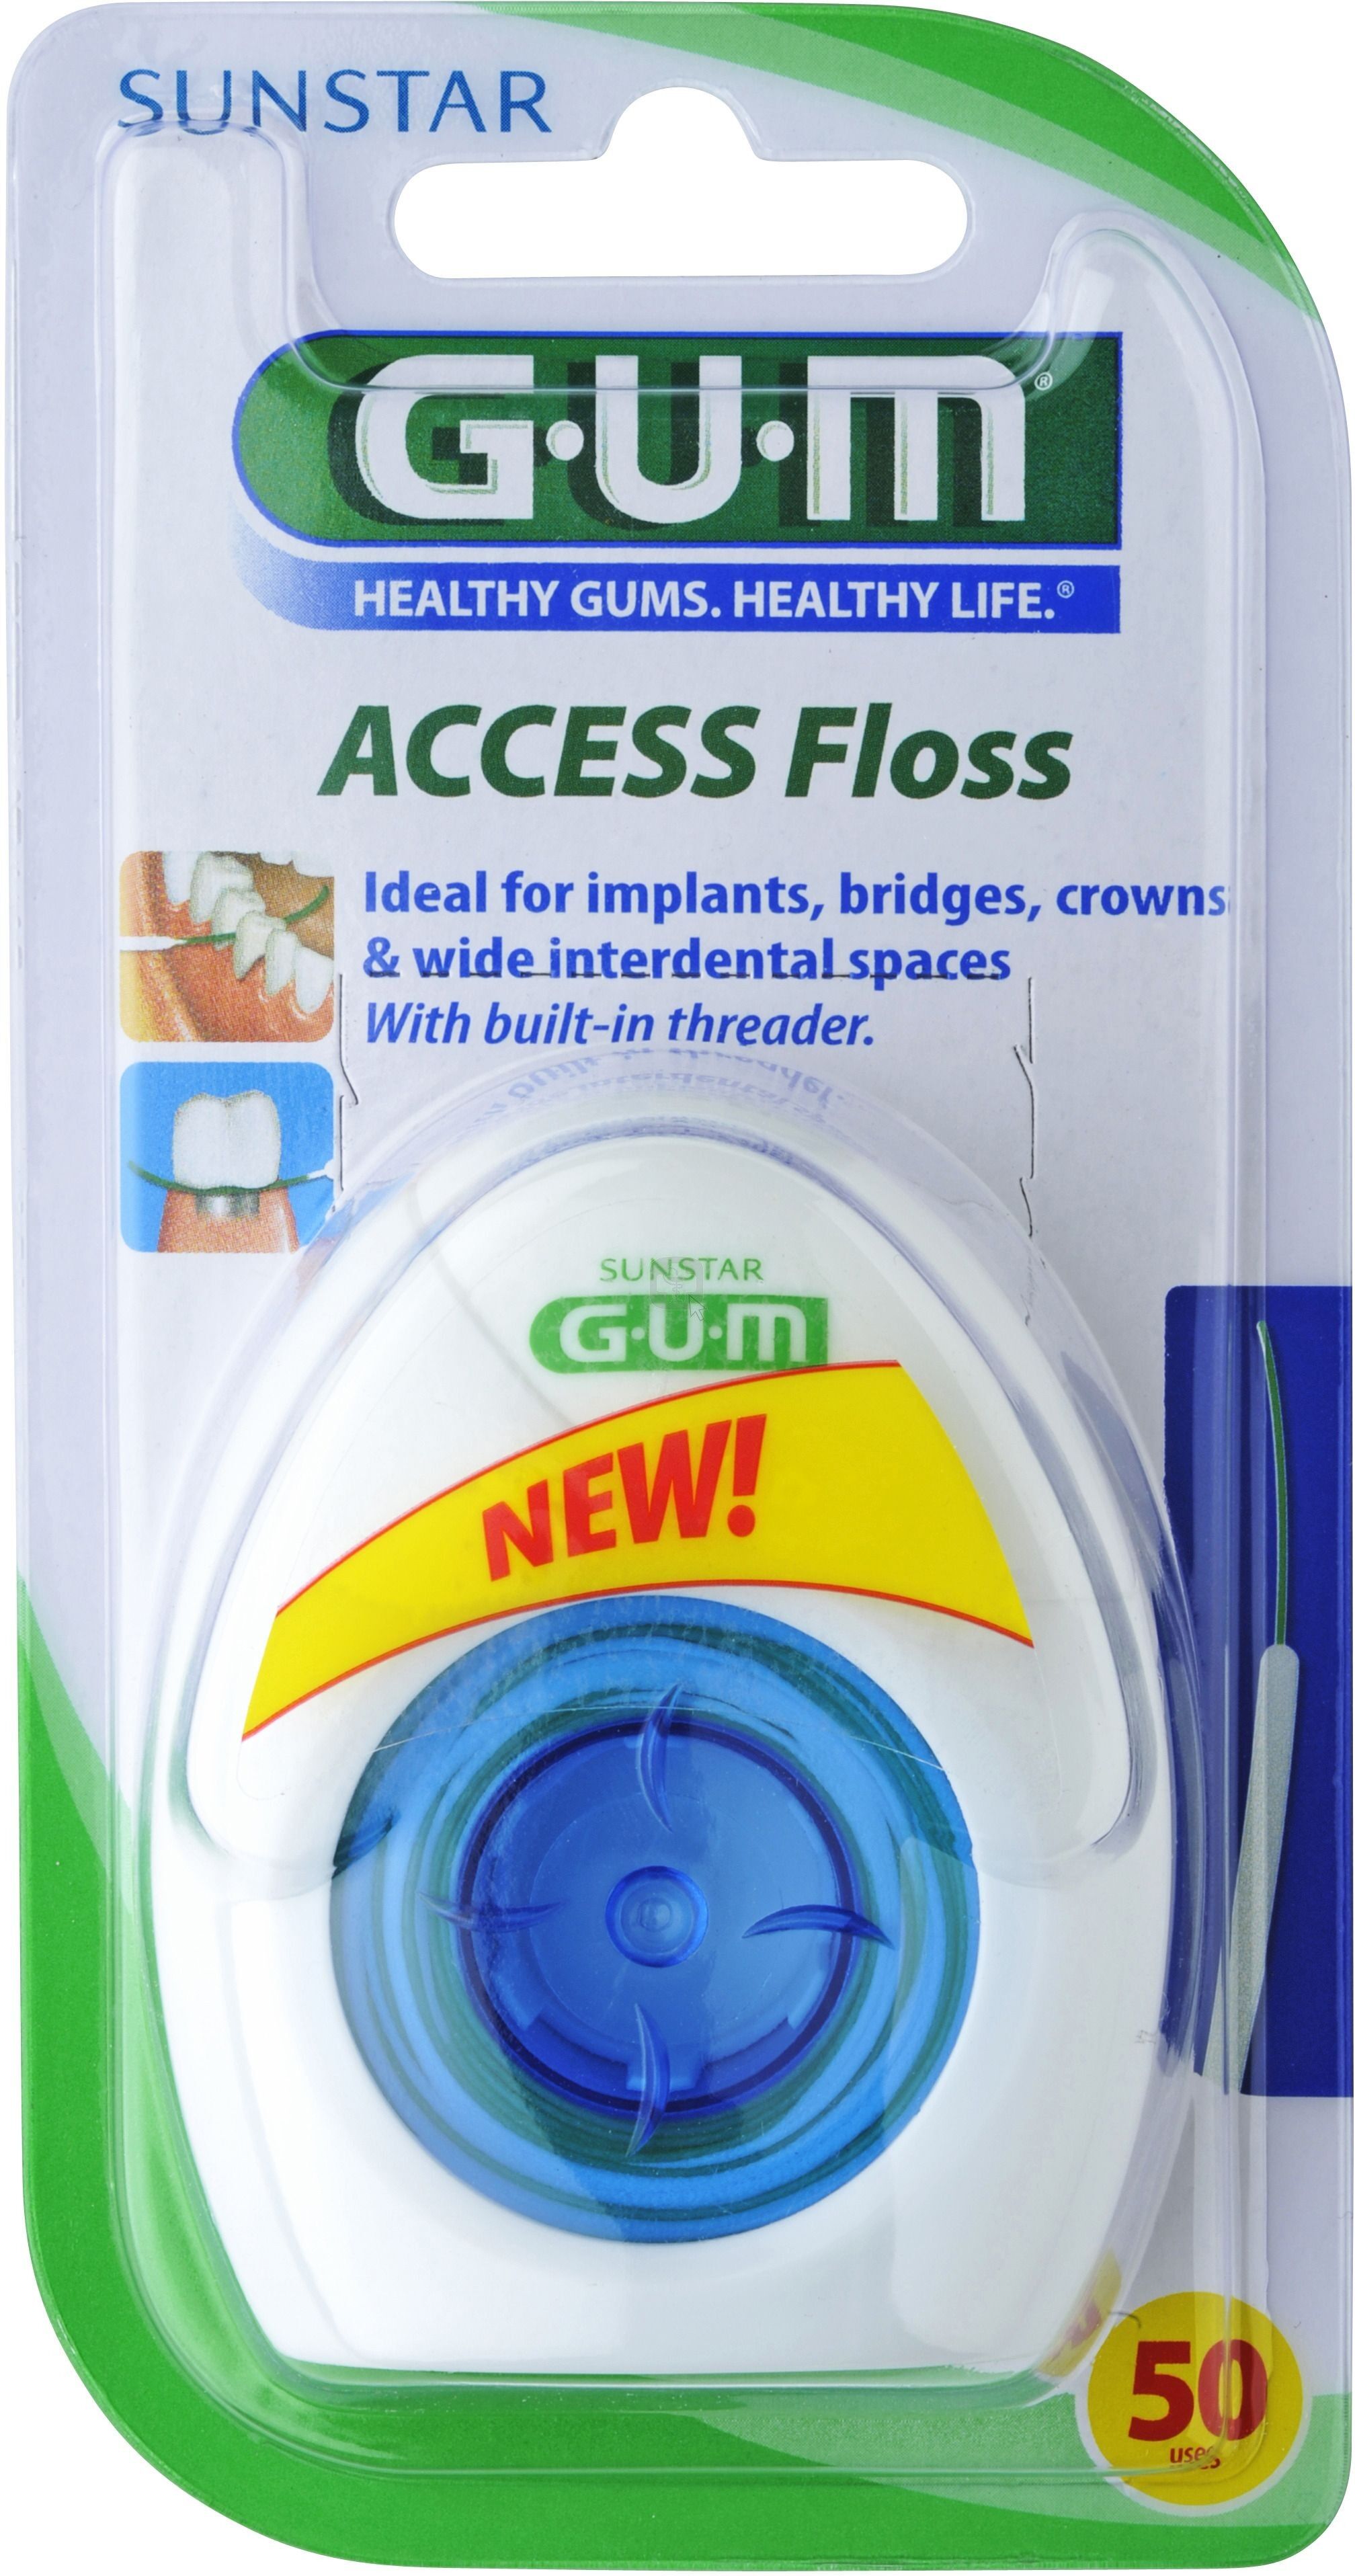 Sunstar GUM Gum Access Floss - 50 stk